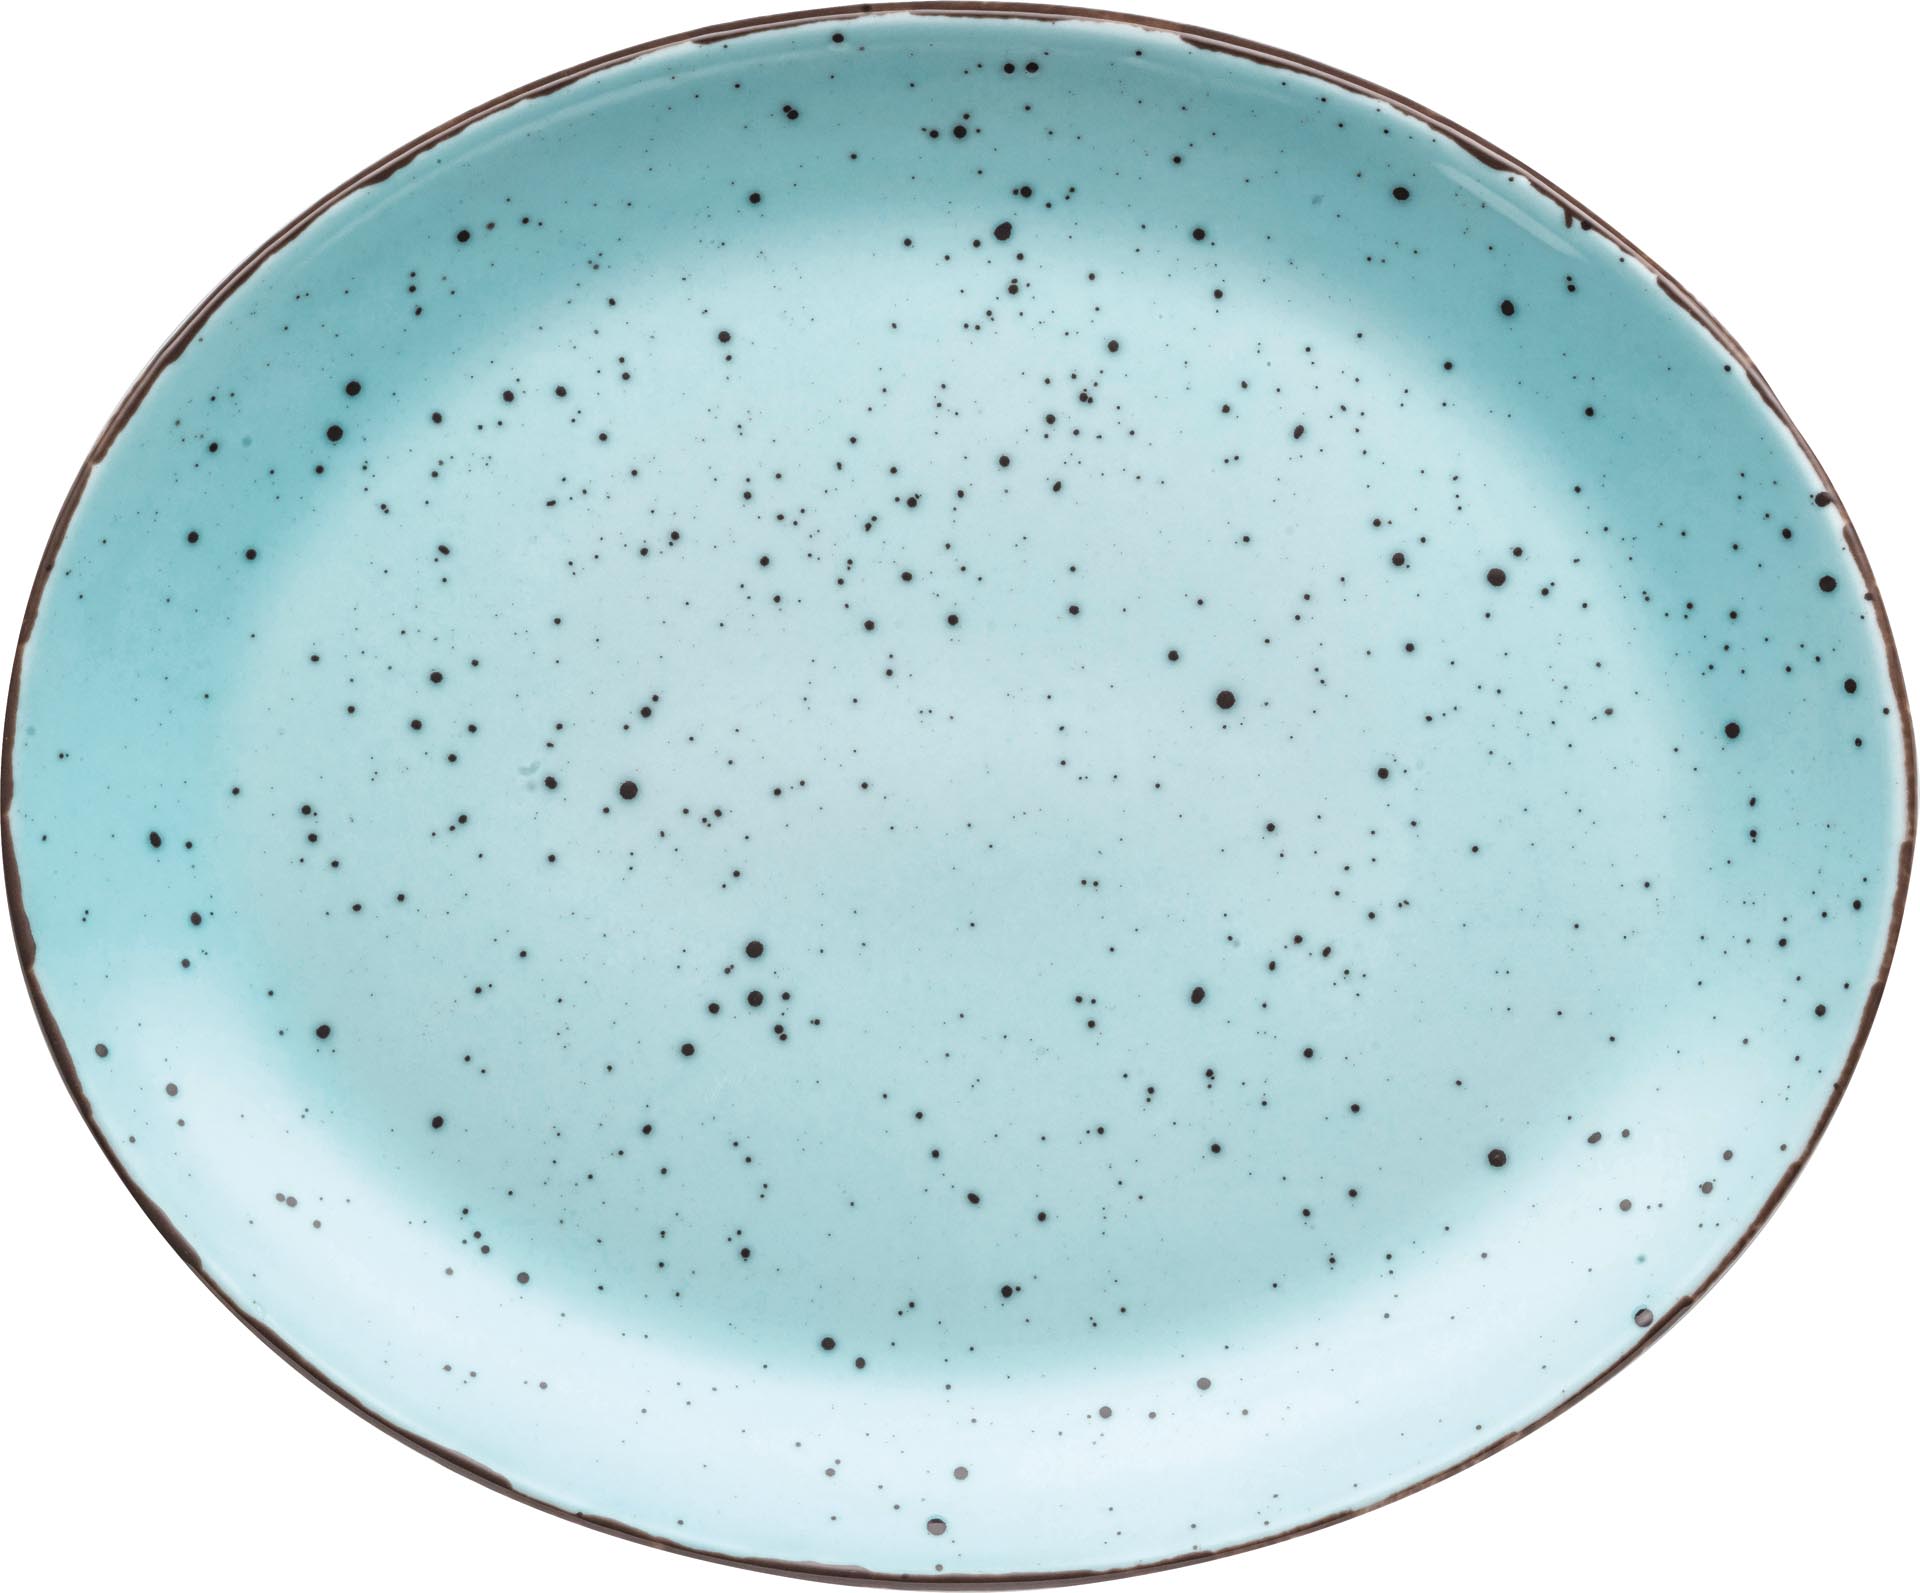 Granja aqua, Platte flach oval 31 x 25,5 cm